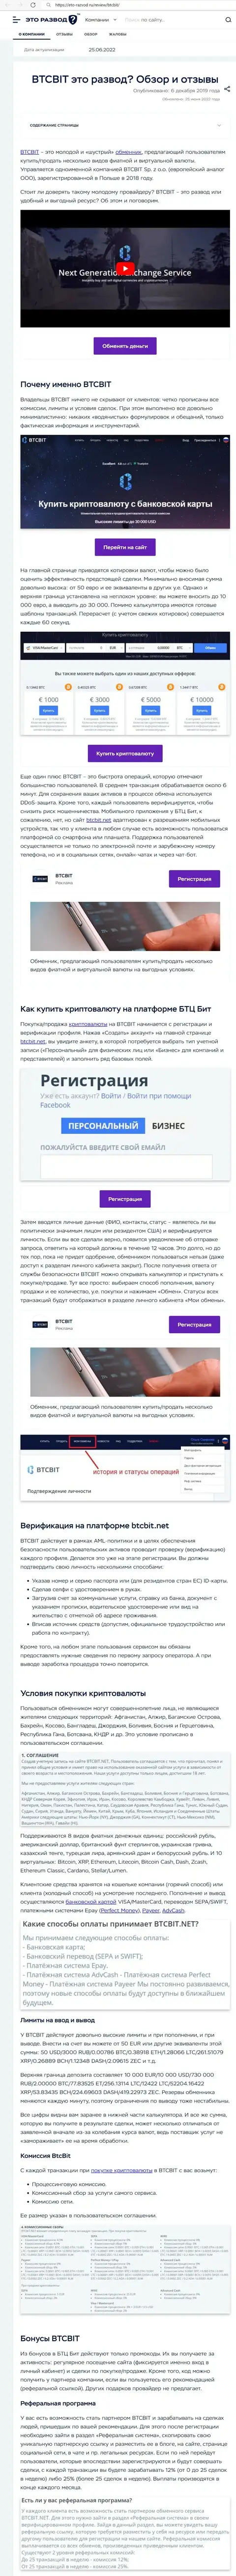 Обзор услуг и условия для совершения операций онлайн-обменки BTCBit в обзорной статье на онлайн-сервисе eto razvod ru